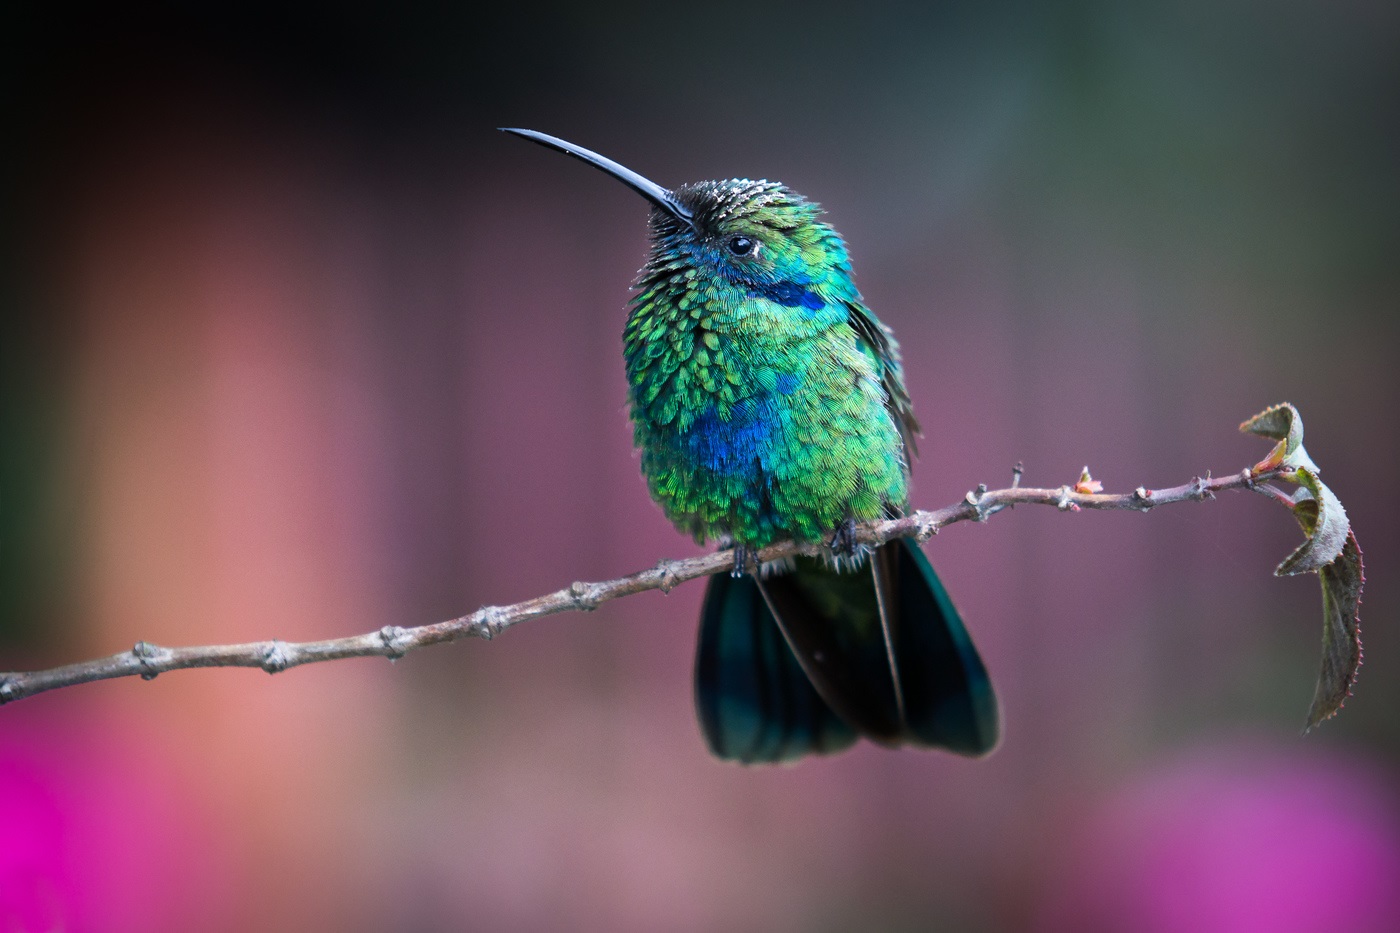 Colombian Andes: mufananidzo we hummingbird pane bazi